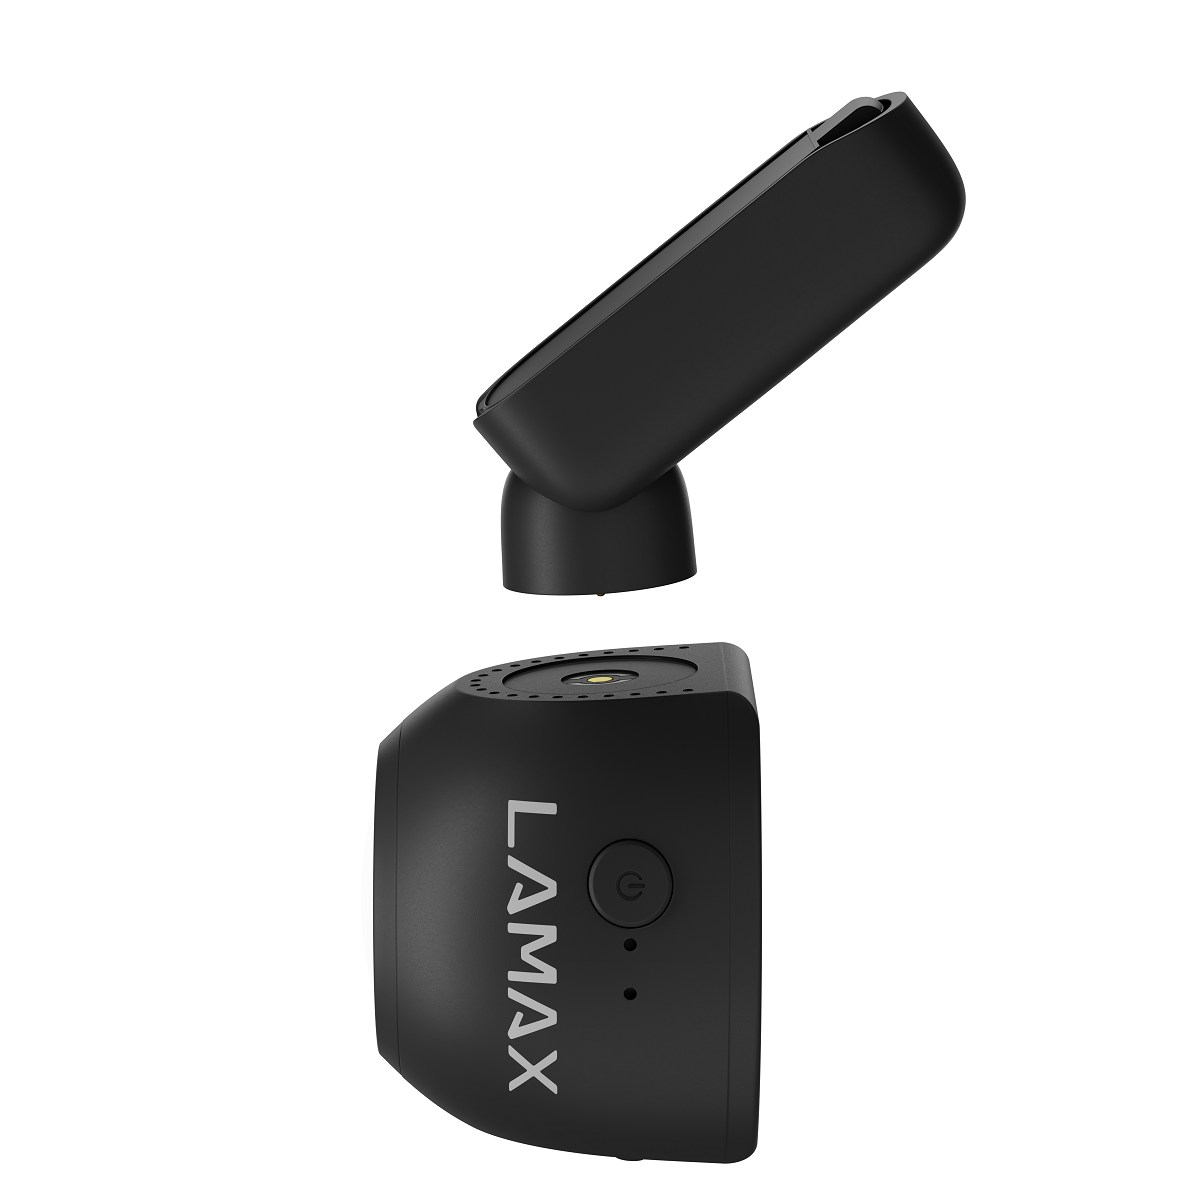 LAMAX T6 Display Dashcam GPS WiFi